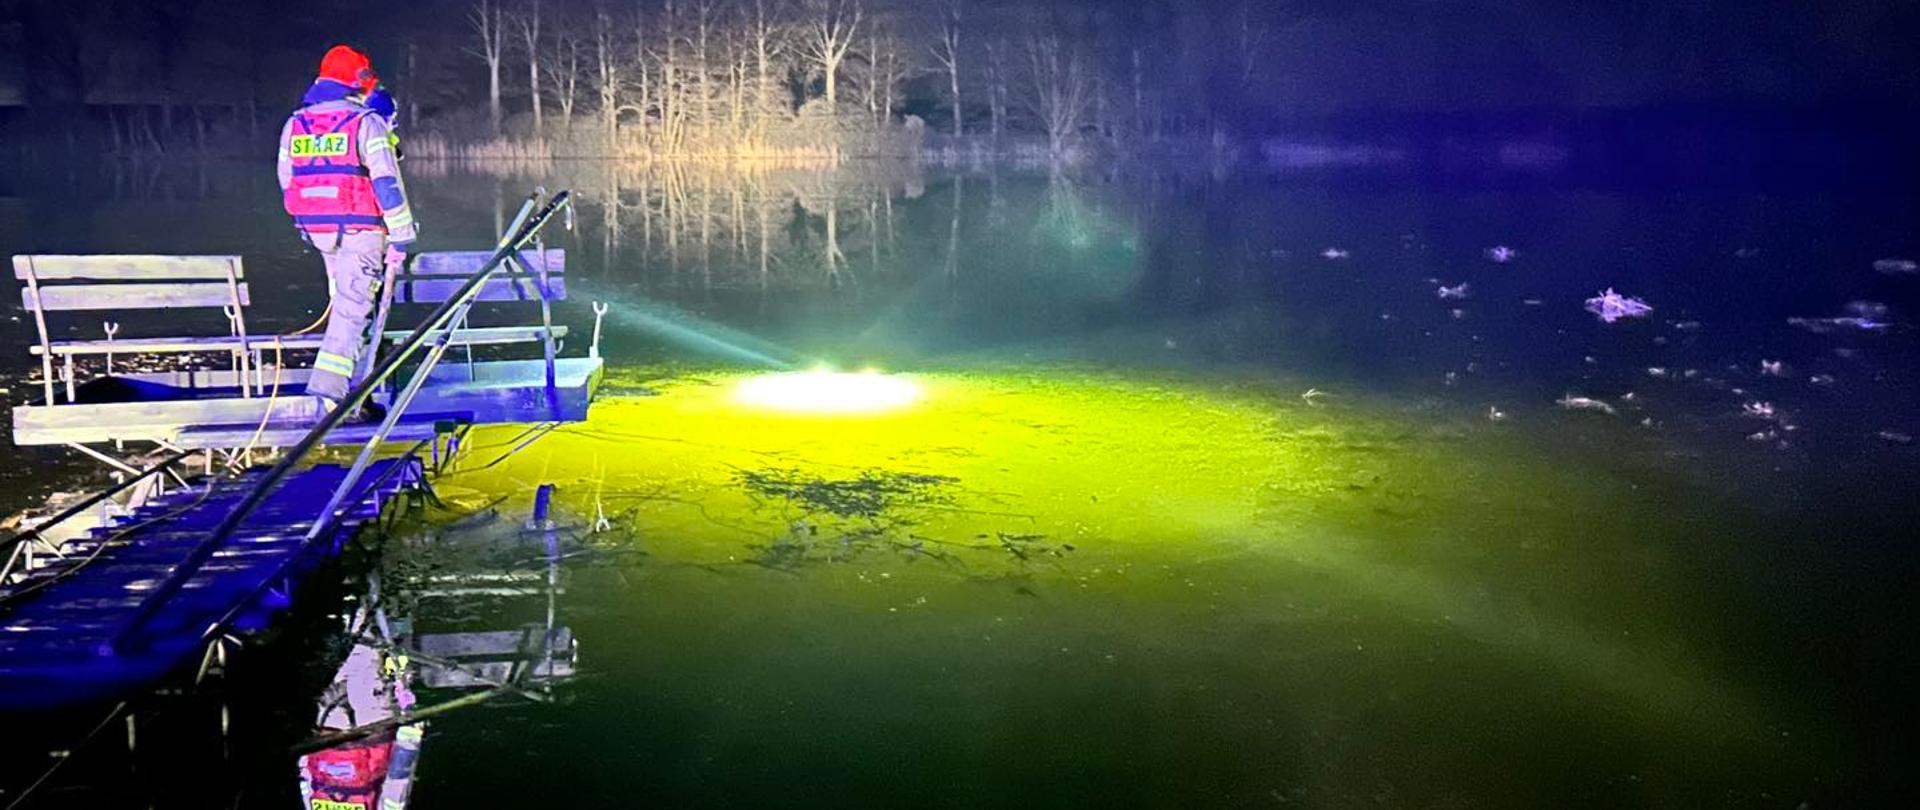 Noc, tafla lodu nad jeziorem. Strażak stoi na drewnianym pomoście.Spod lodu widać żółte światło drona podwodnego.